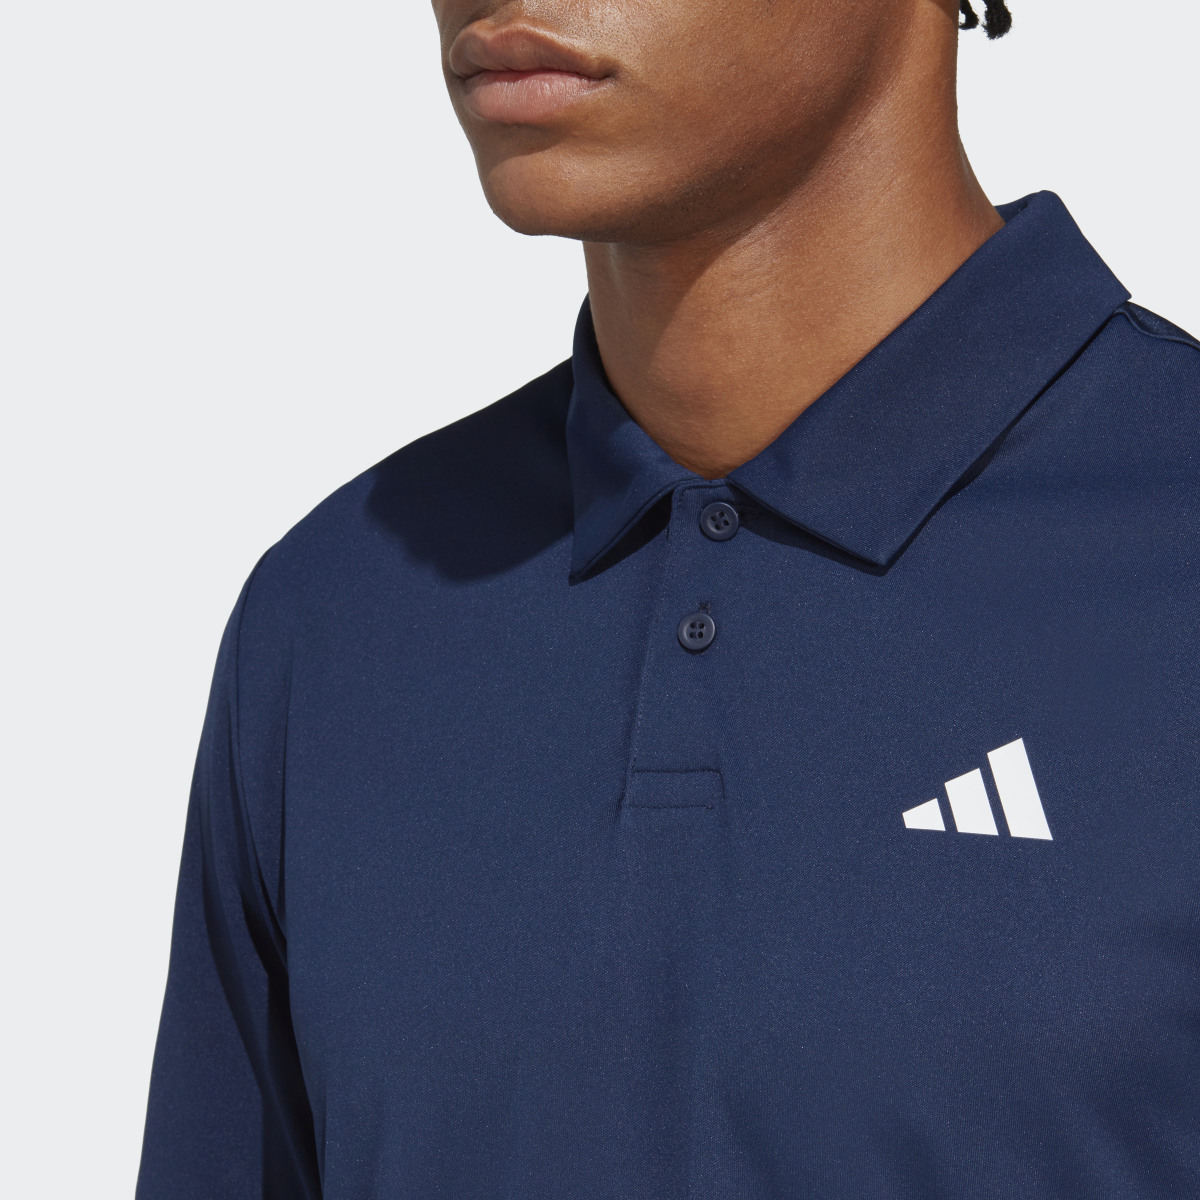 Adidas Club Tennis Polo Shirt. 6